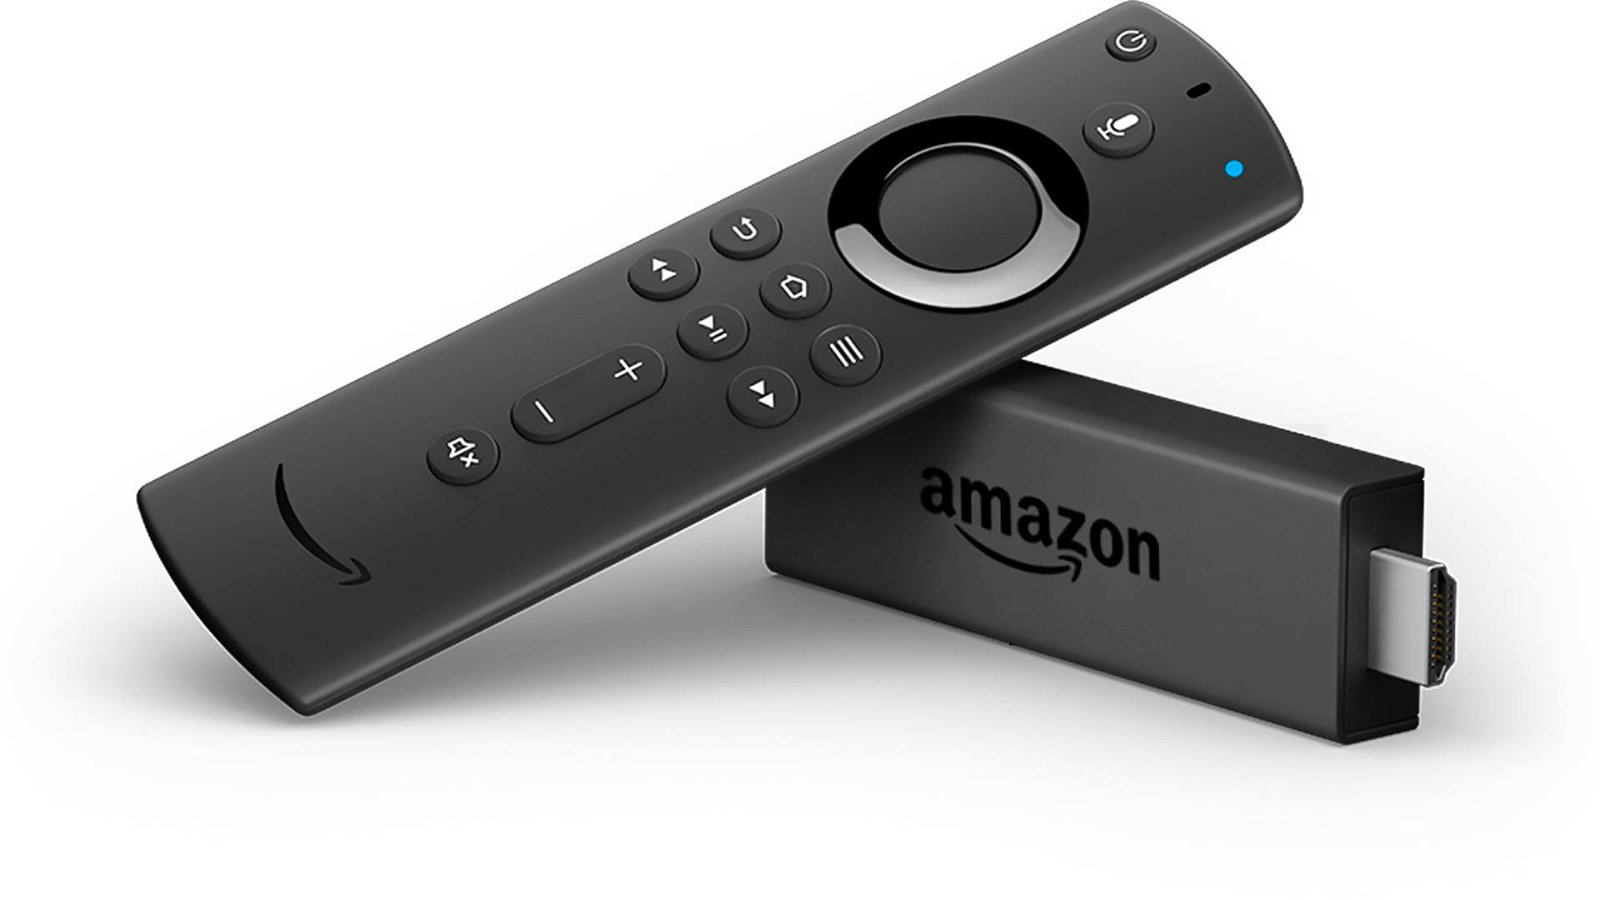 Immagine di Amazon Fire TV Stick, il telecomando con Alexa arriva anche per la versione base